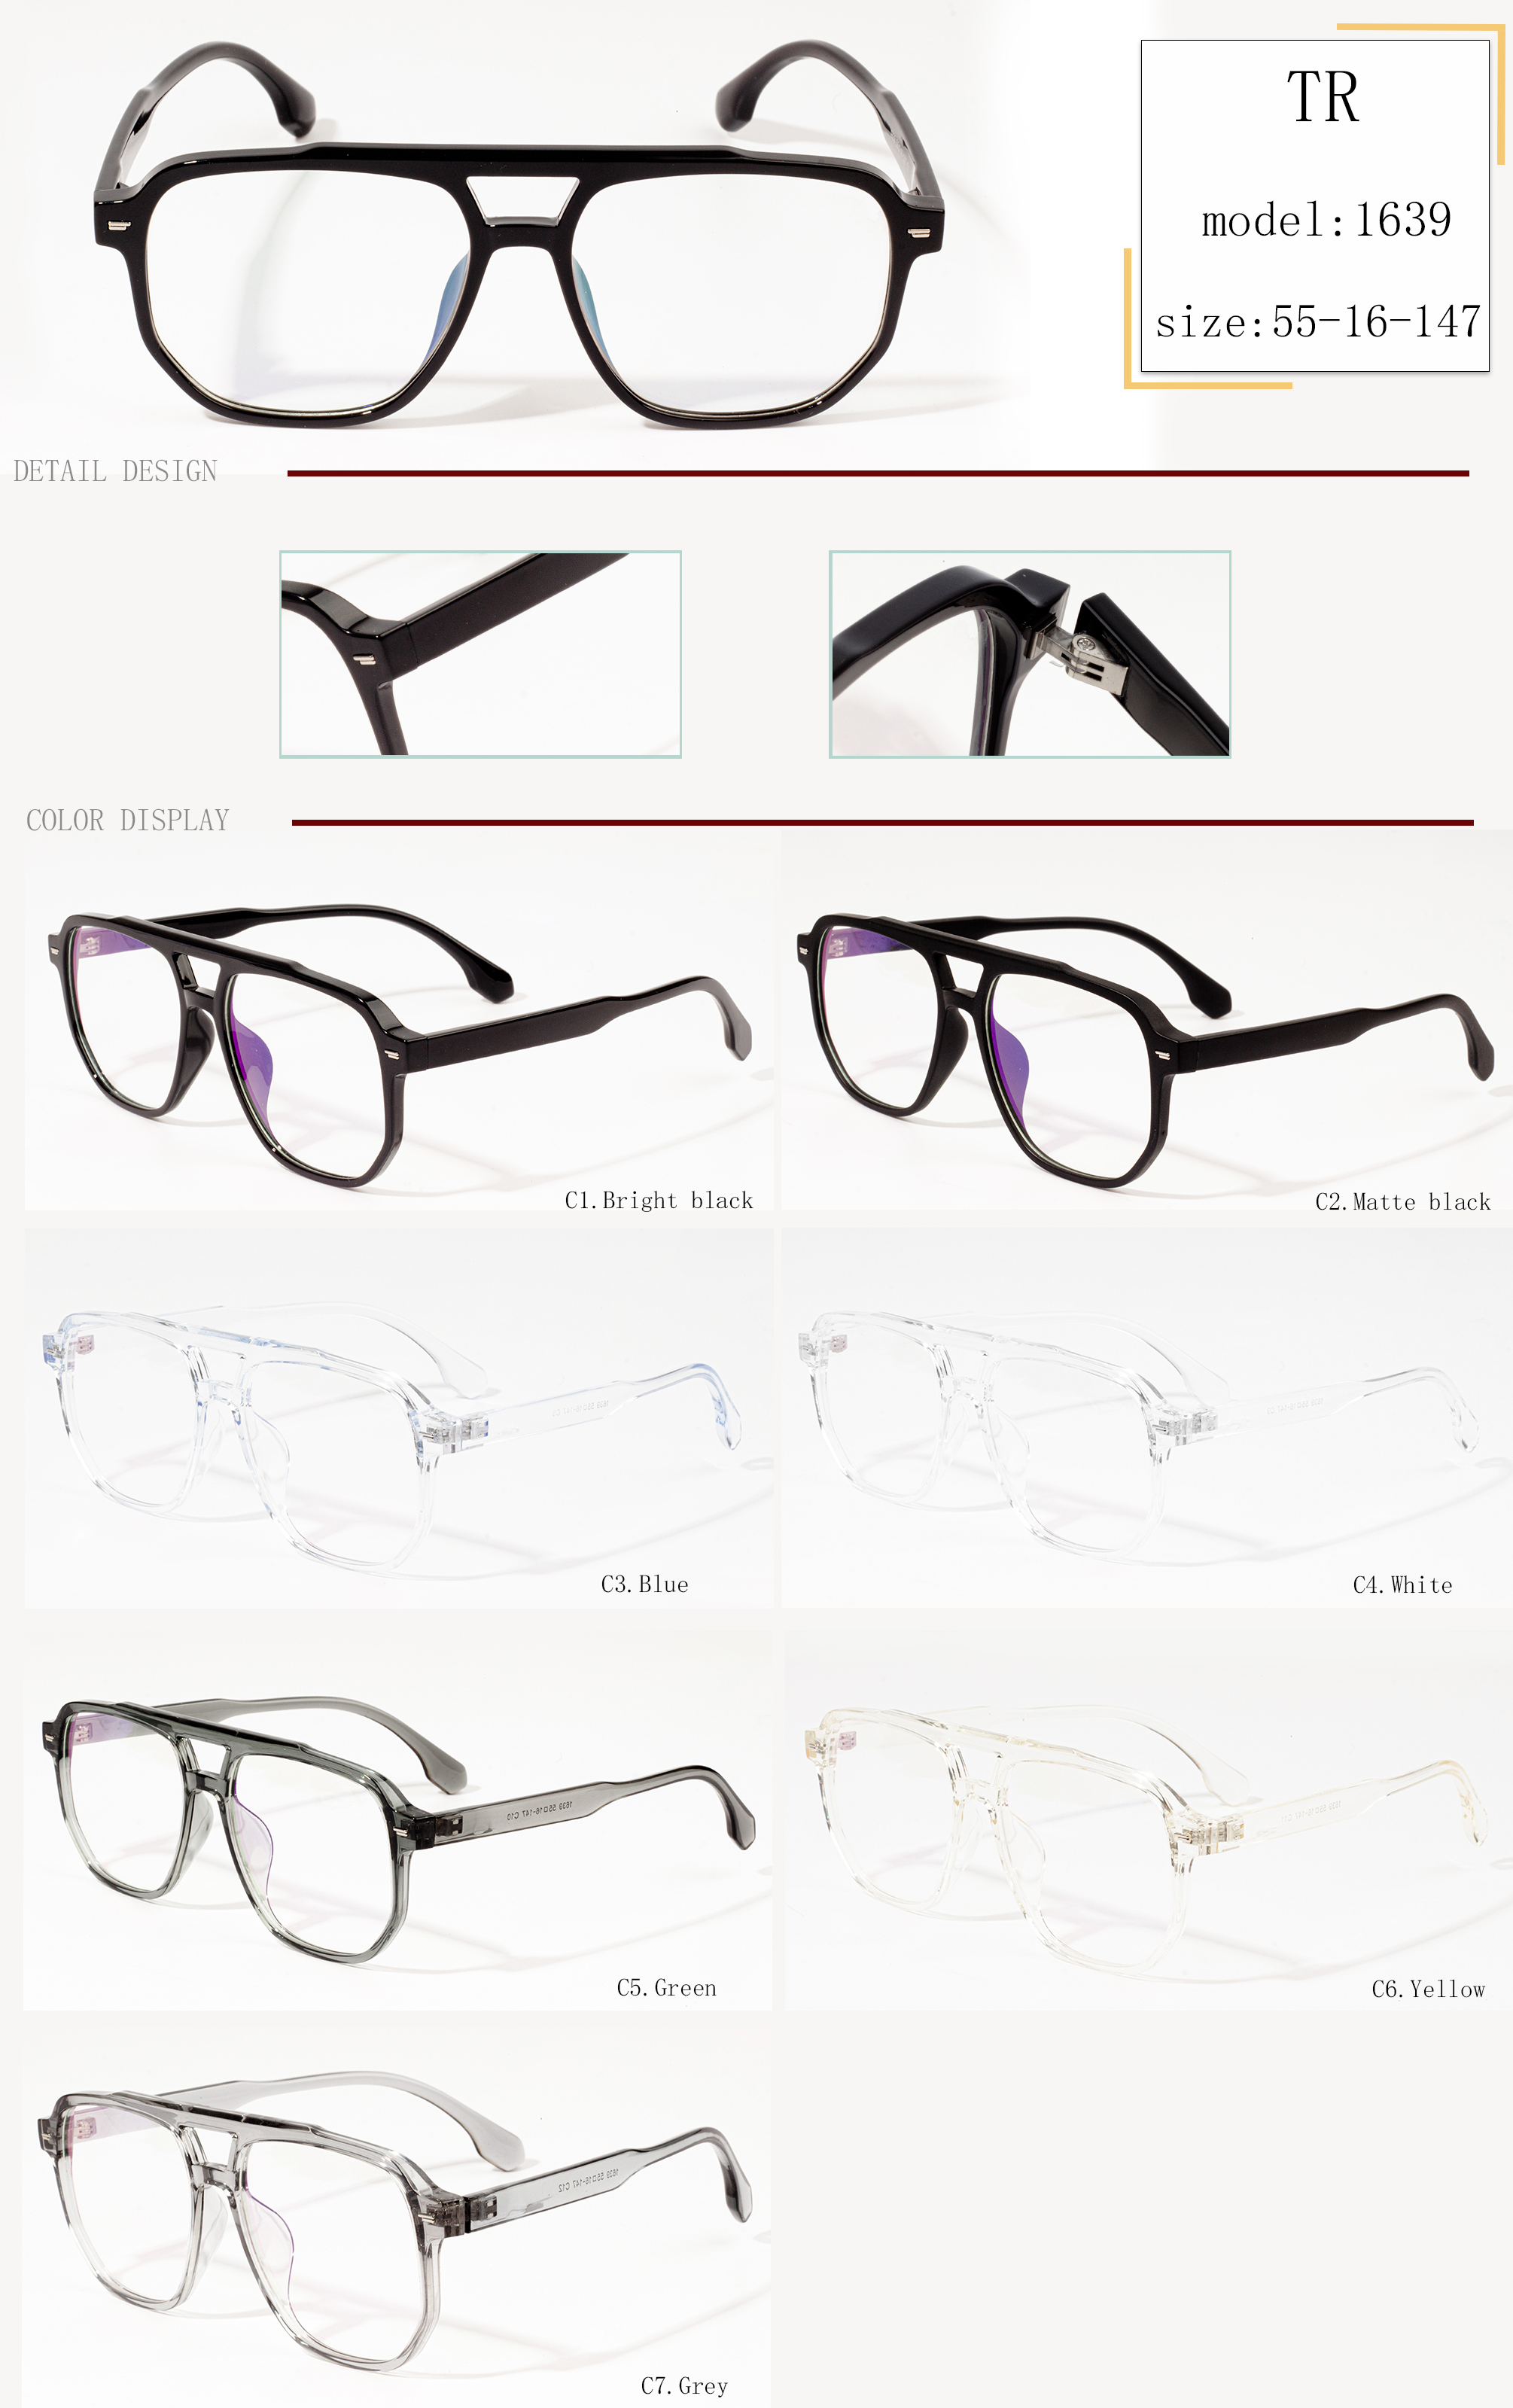 divatos szemüveg